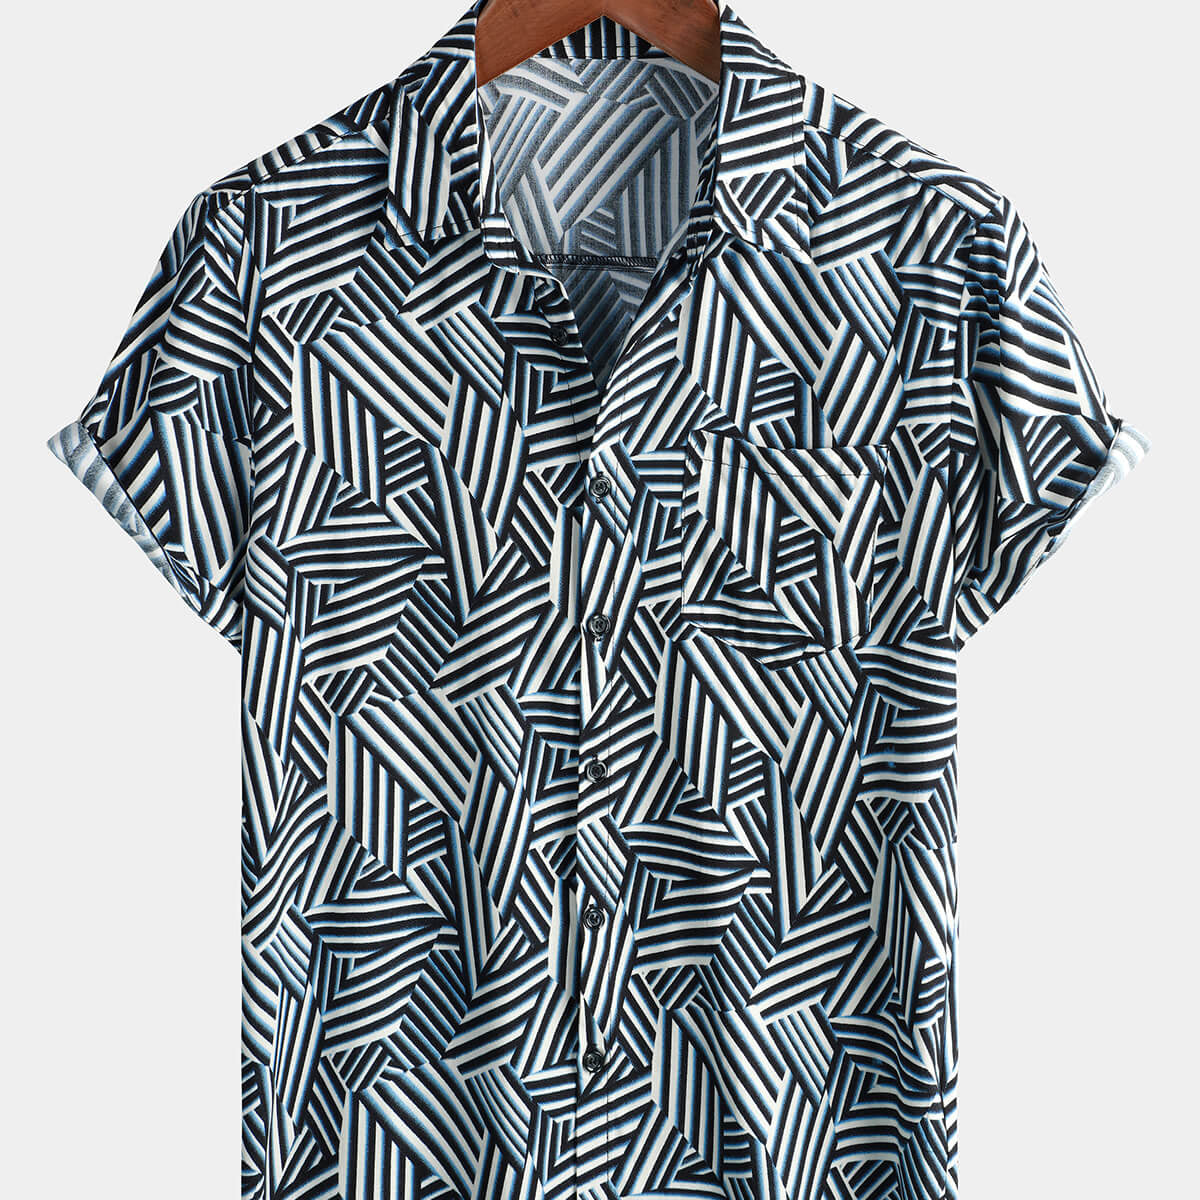 Men's Button Up Rayon Summer Beach Short Sleeve Shirt